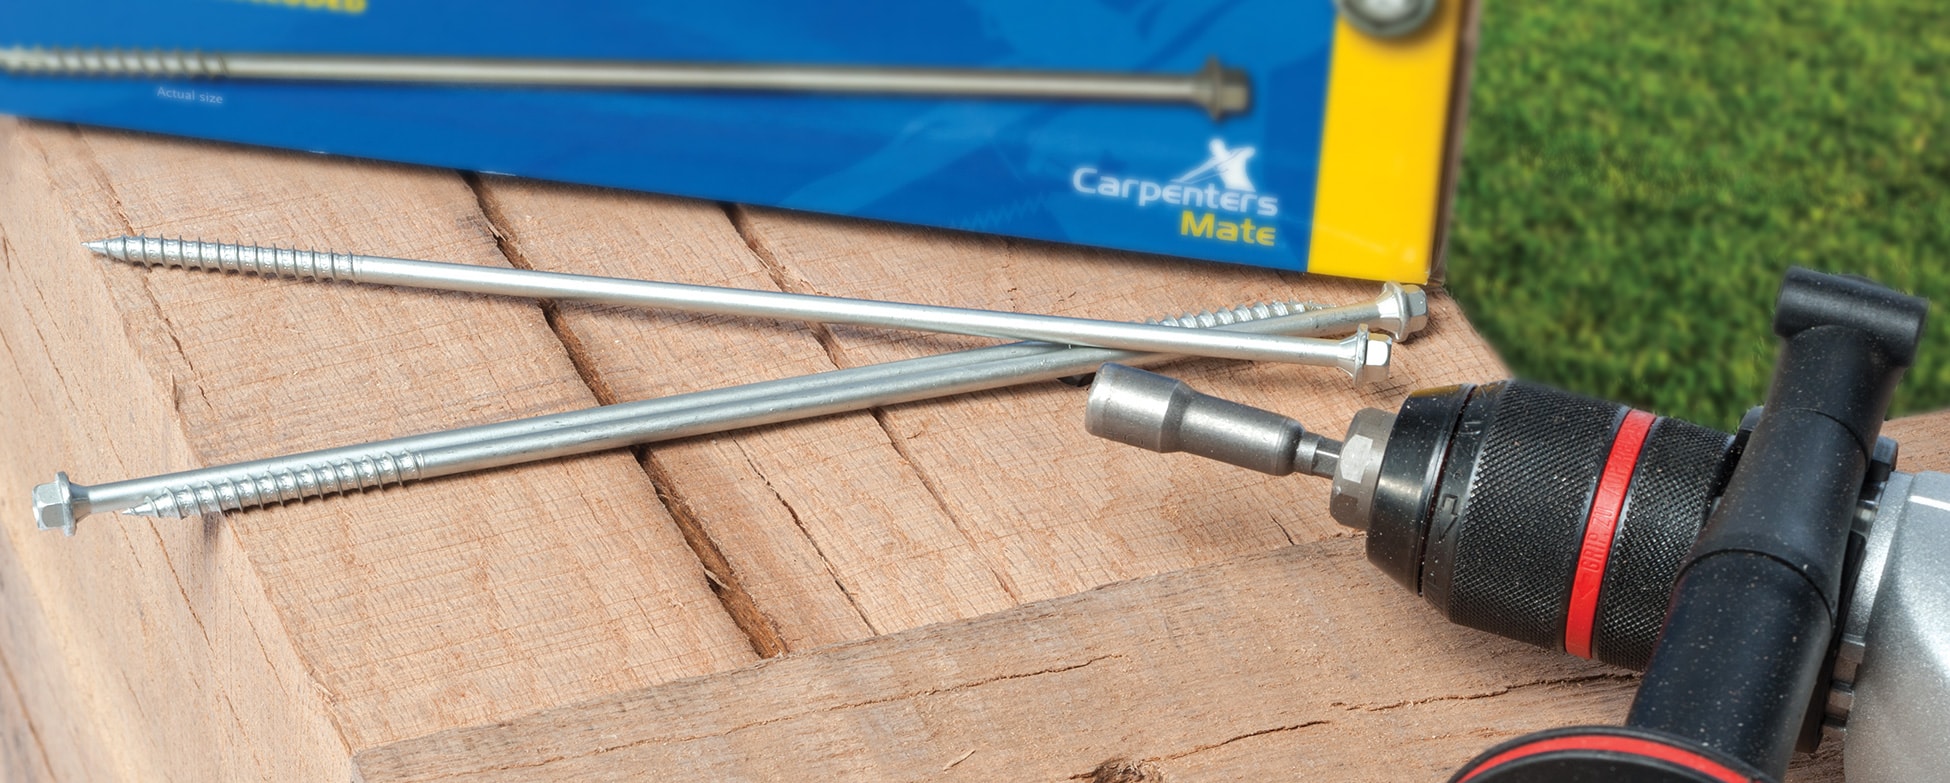 Carpenters Mate Self-Drilling Screws: Quick, Clean & Efficient